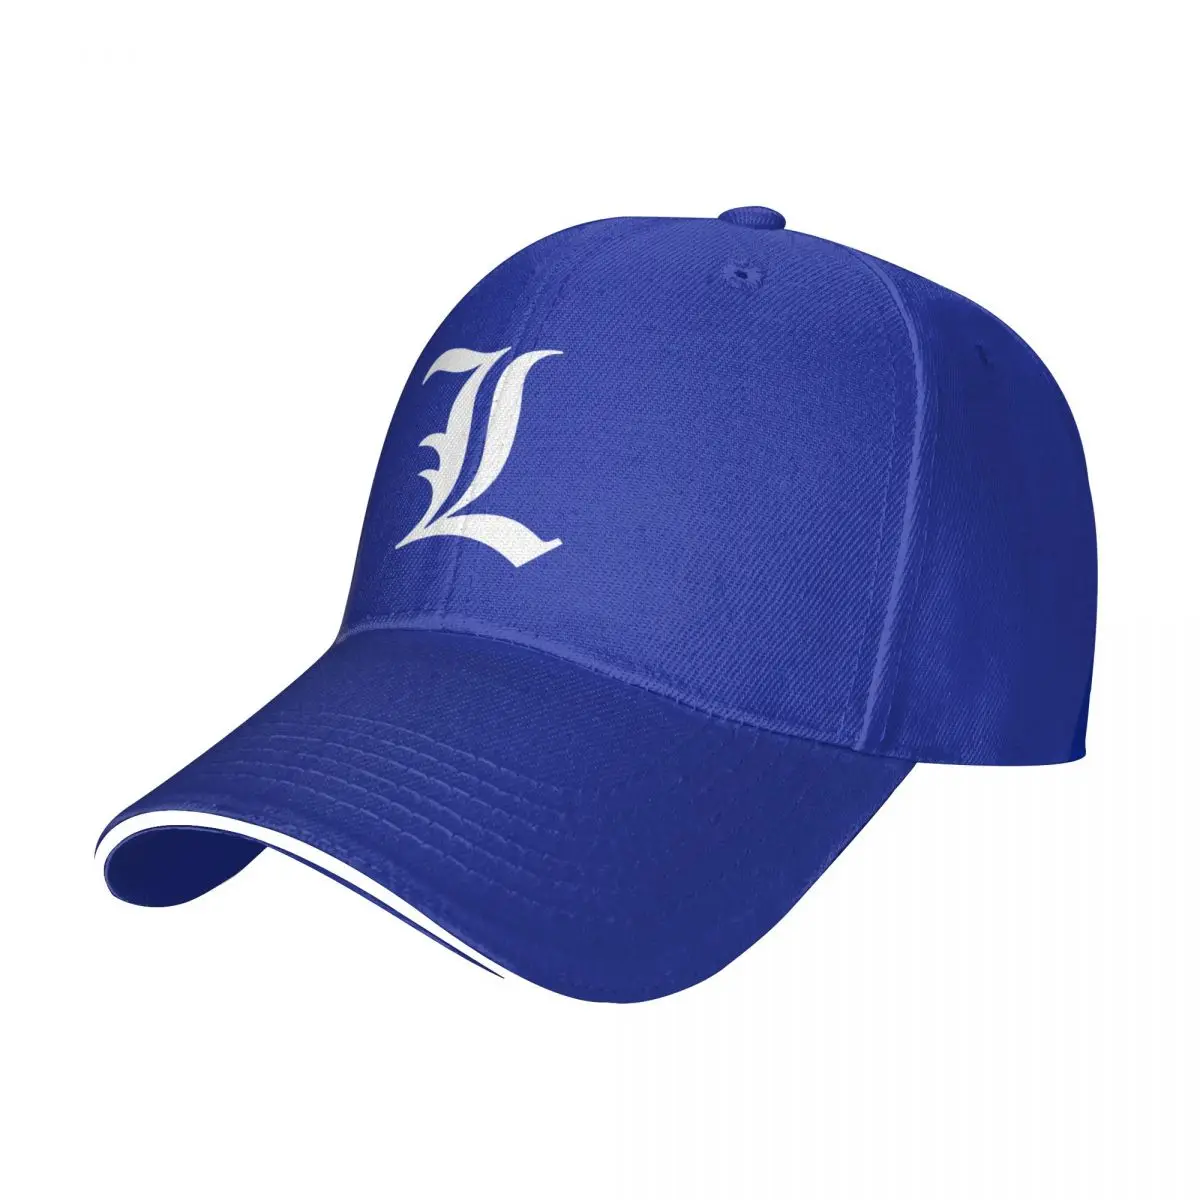 

Новая L - Old английская инициальная белая бейсболка с буквой L, кепки, бейсболка с капюшоном, новая Кепка, кепка, женская кепка для мужчин